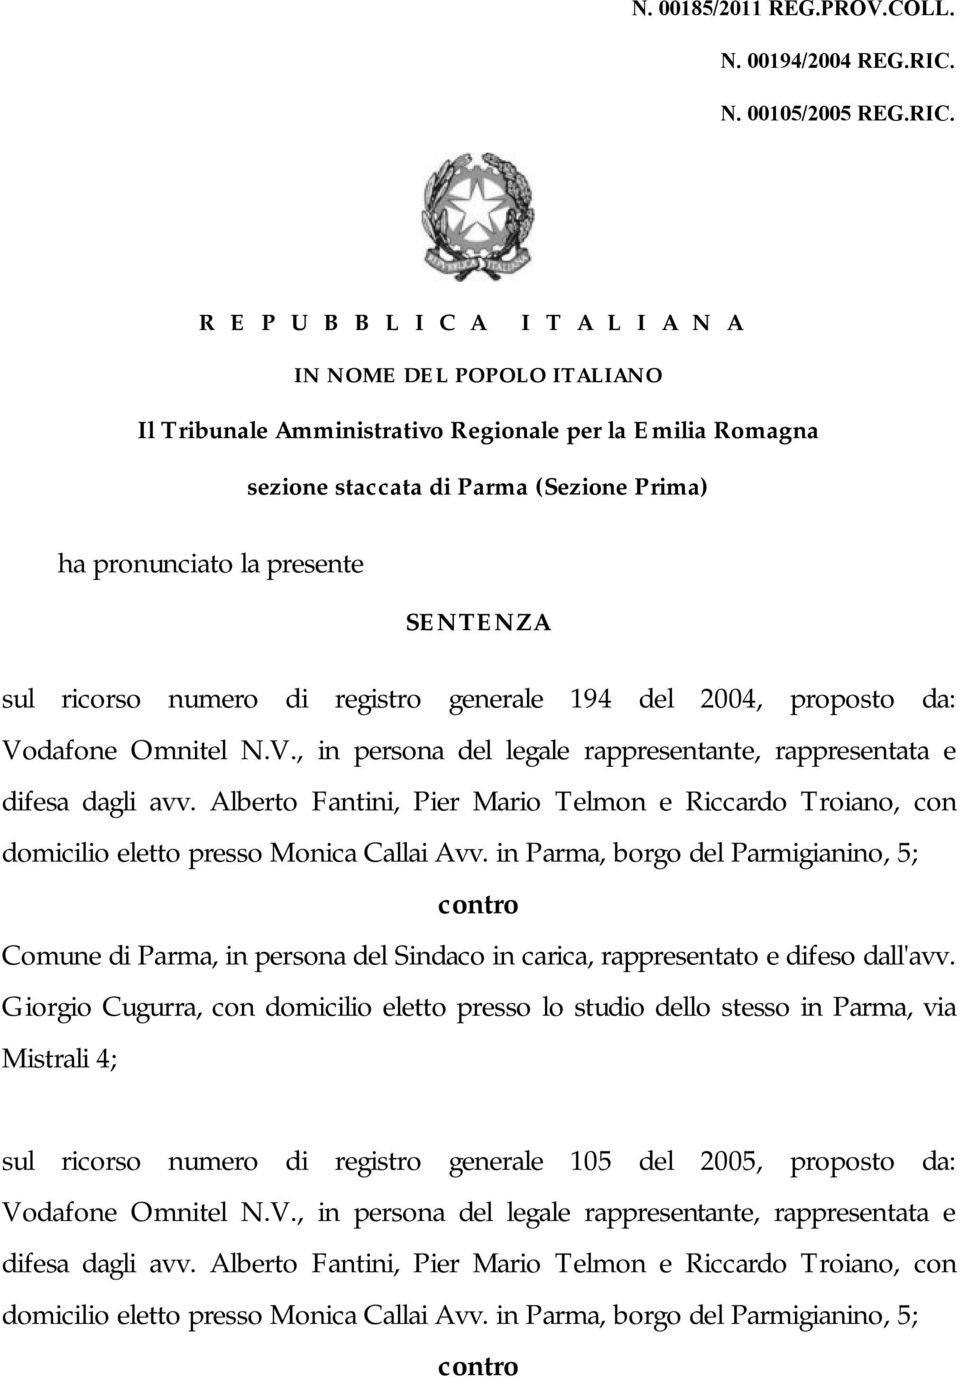 R E P U B B L I C A I T A L I A N A IN NOME DEL POPOLO ITALIANO Il Tribunale Amministrativo Regionale per la Emilia Romagna sezione staccata di Parma (Sezione Prima) ha pronunciato la presente